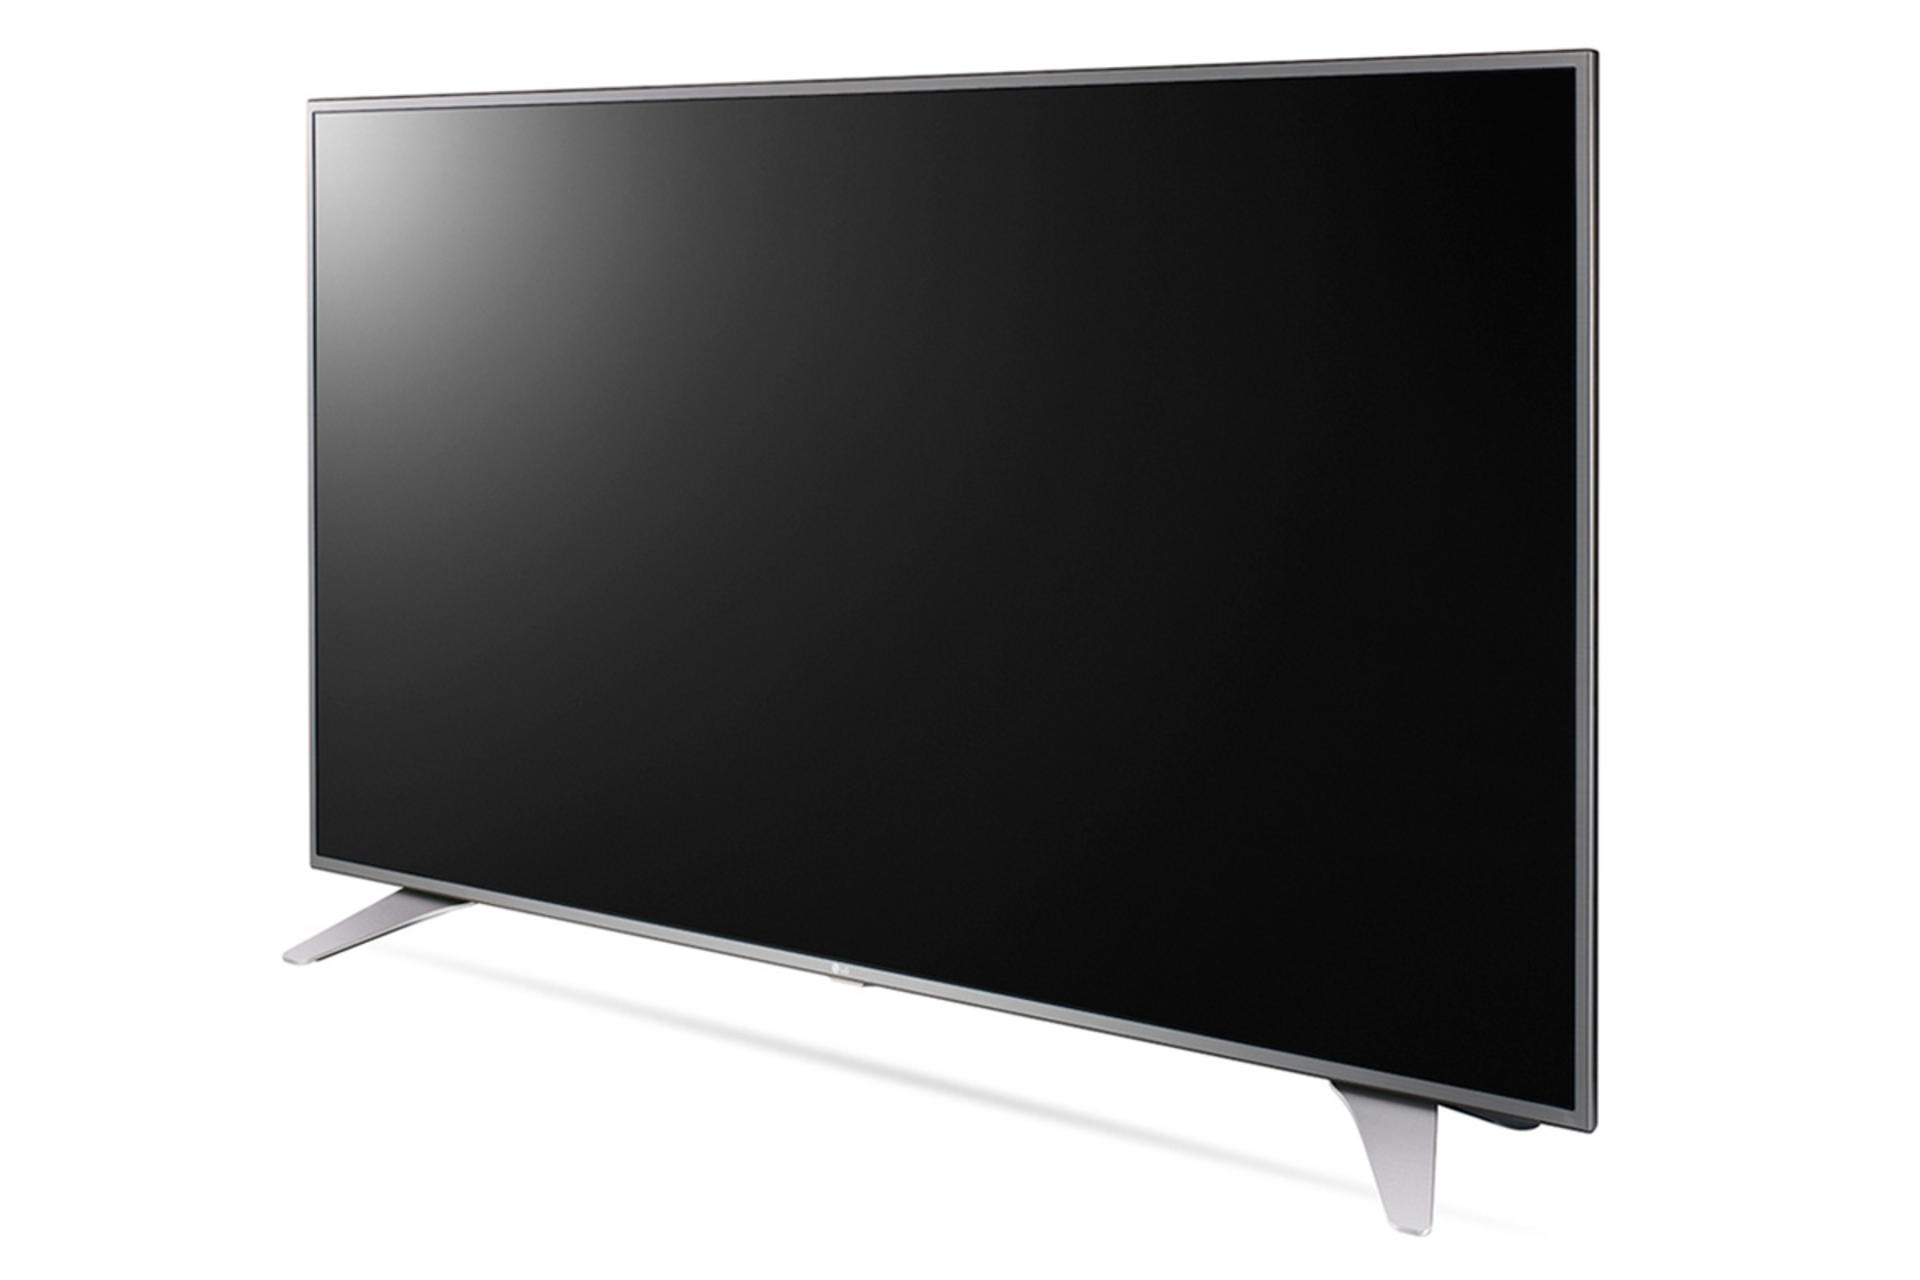 نمای نیمرخ تلویزیون ال جی UH650 مدل 43 اینچ با صفحه خاموش